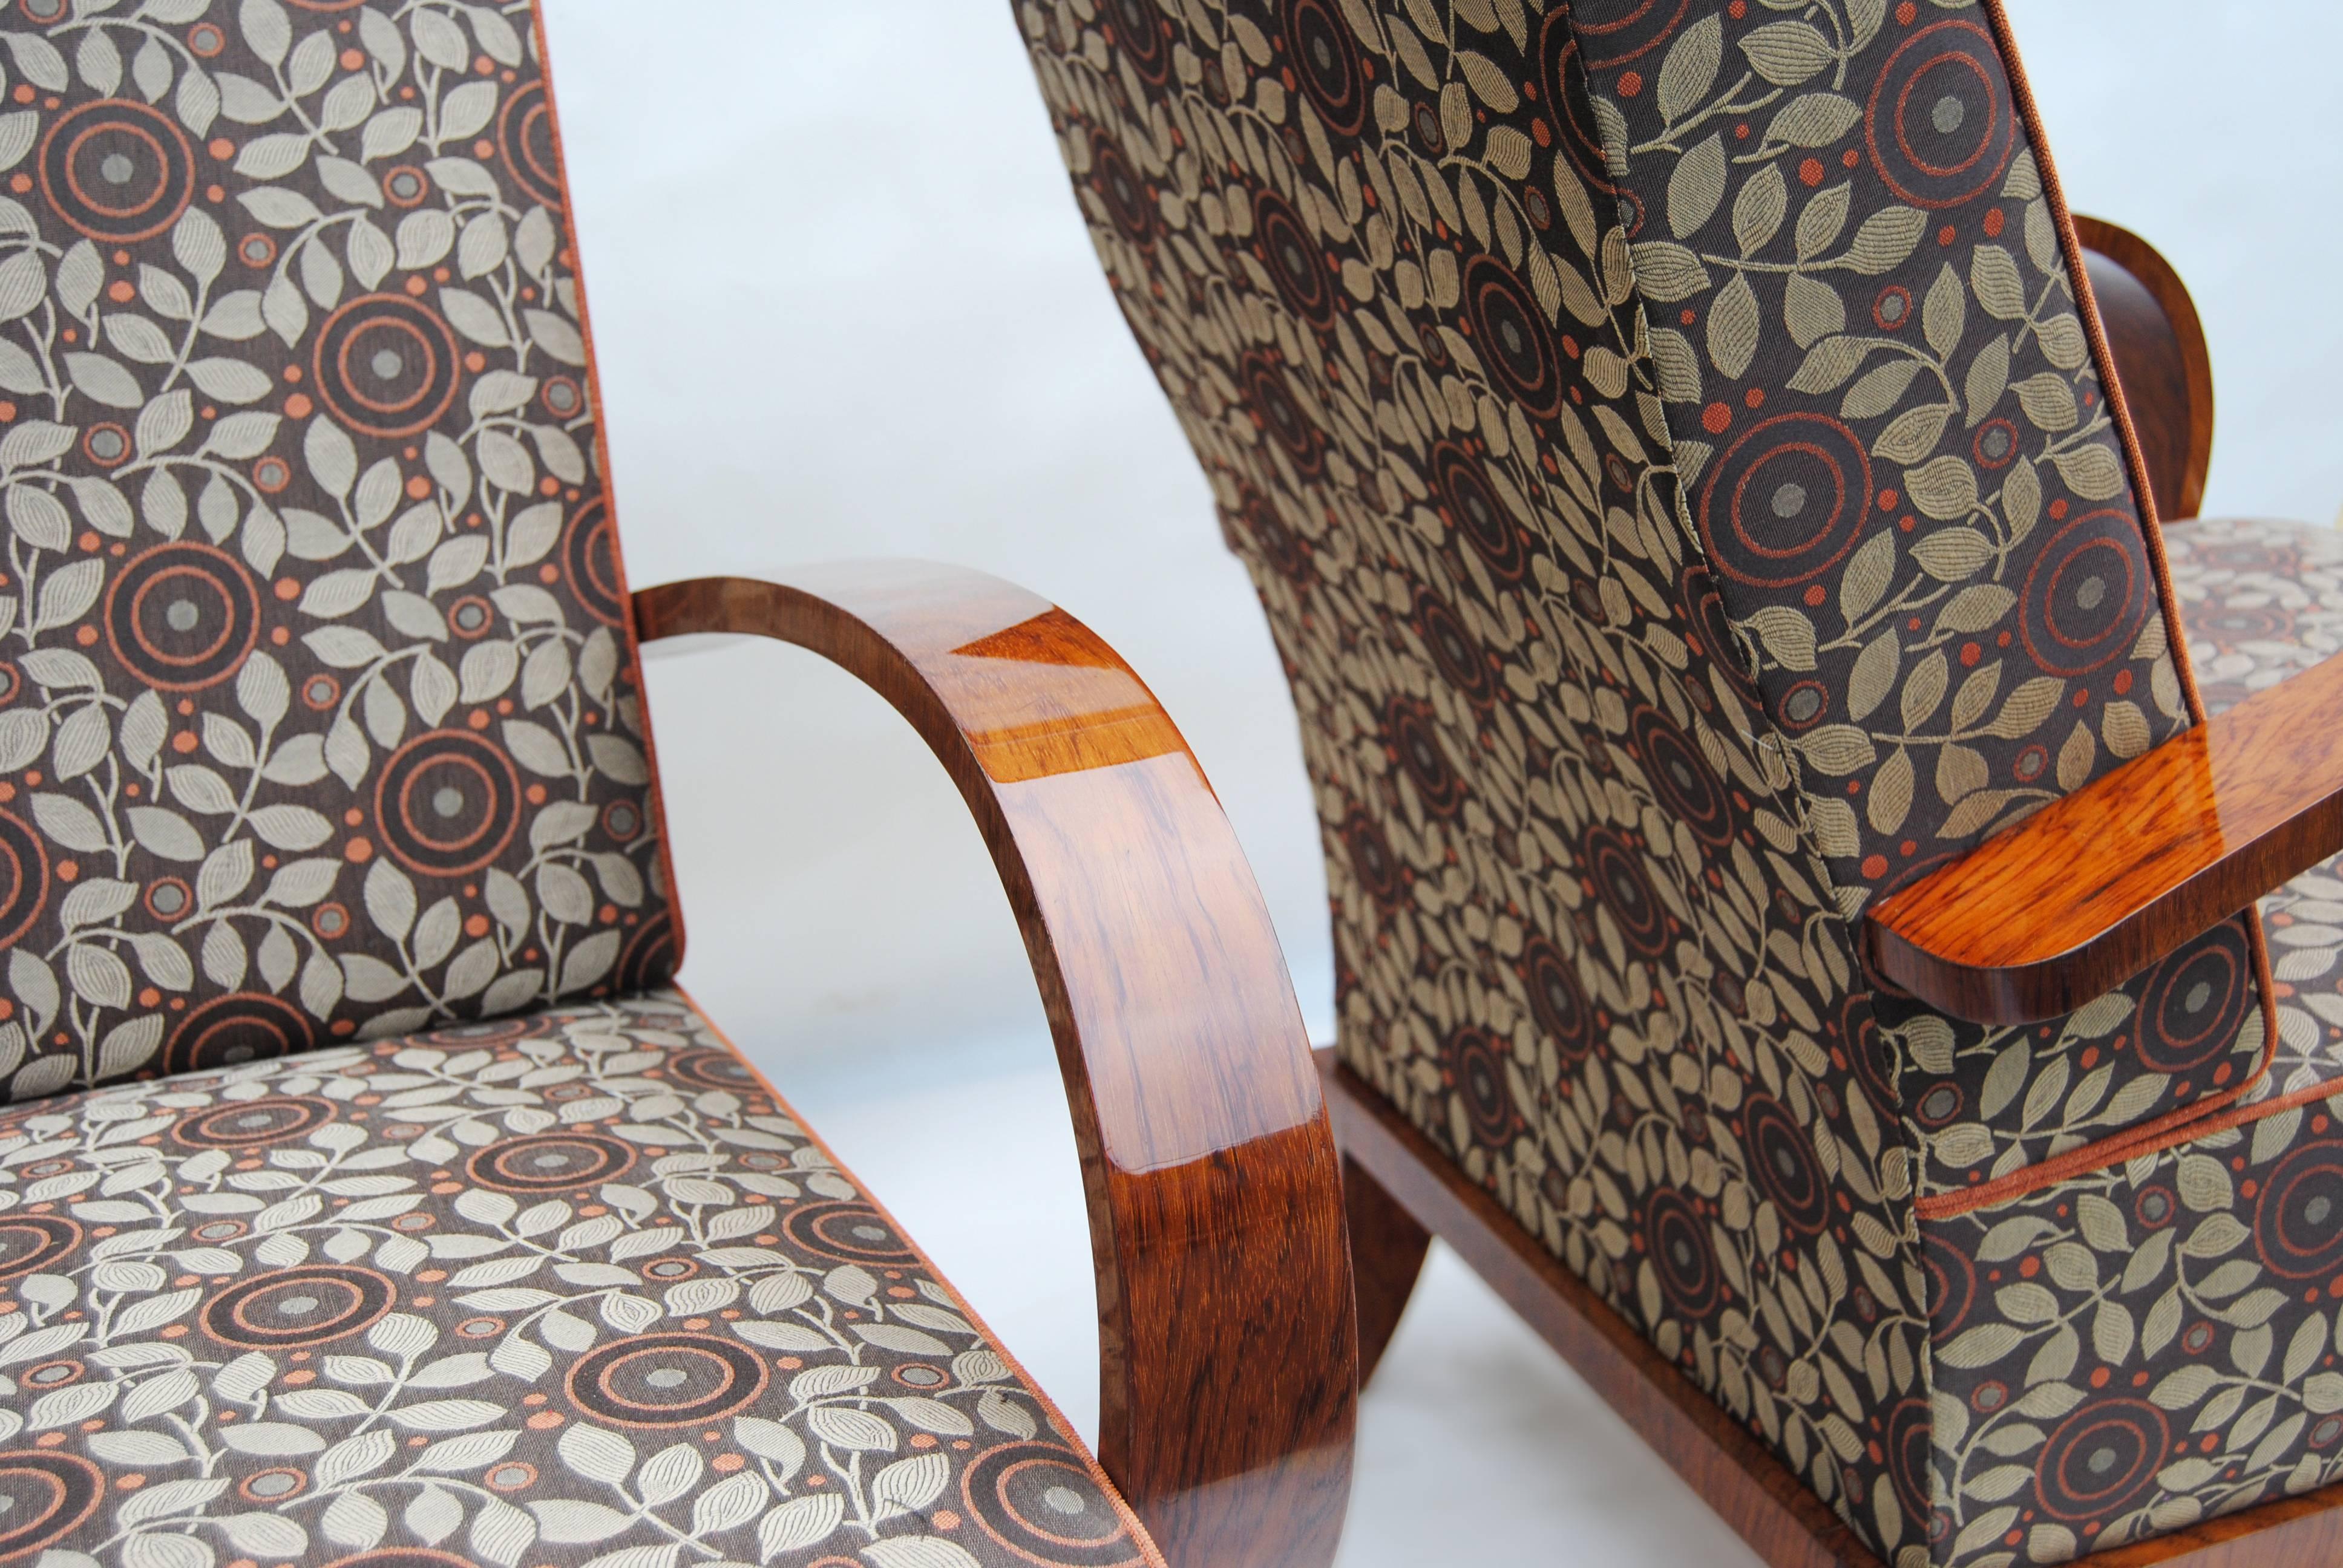 Paar Art-Deco-Sessel.
Vollständig restauriert, Oberfläche durch Klavierlacke auf Hochglanz gebracht. Neue Polsterung und neuer Stoff.

Wir garantieren einen sicheren und günstigen Lufttransport von Europa in die ganze Welt innerhalb von 7 Tagen.
Der